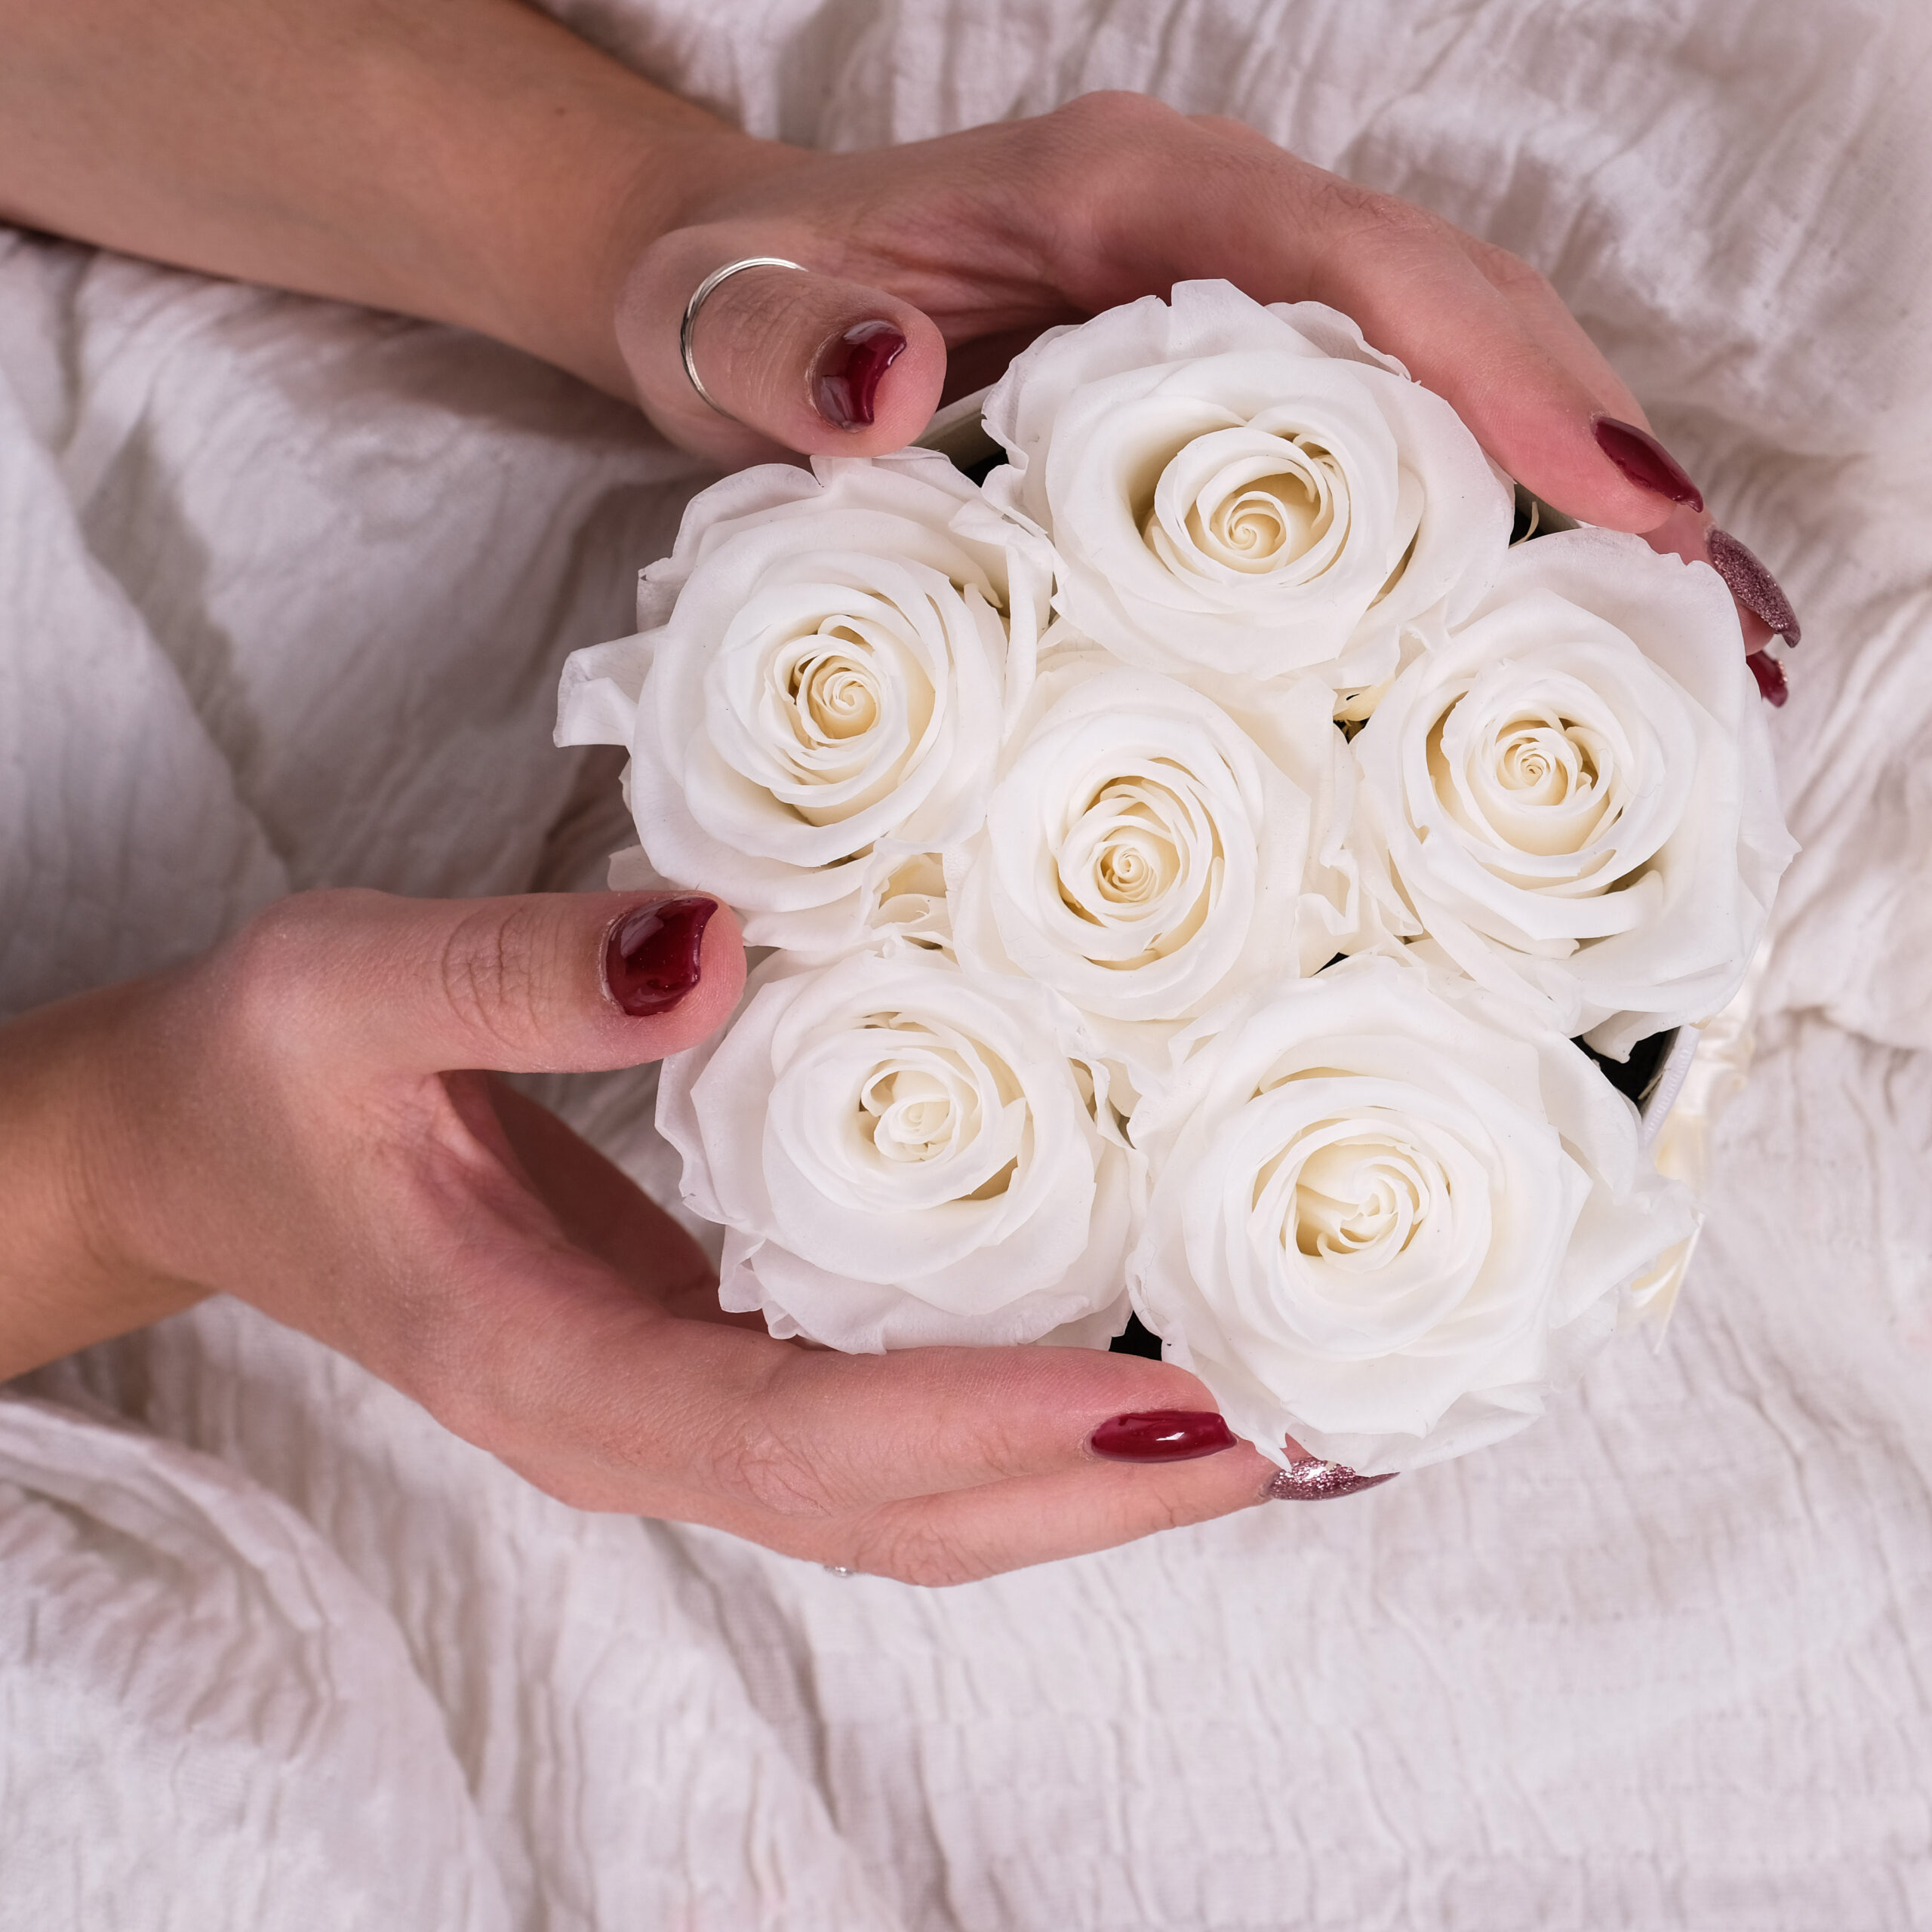 rose stabilizzate bianche in scatola tonda con mani femminili